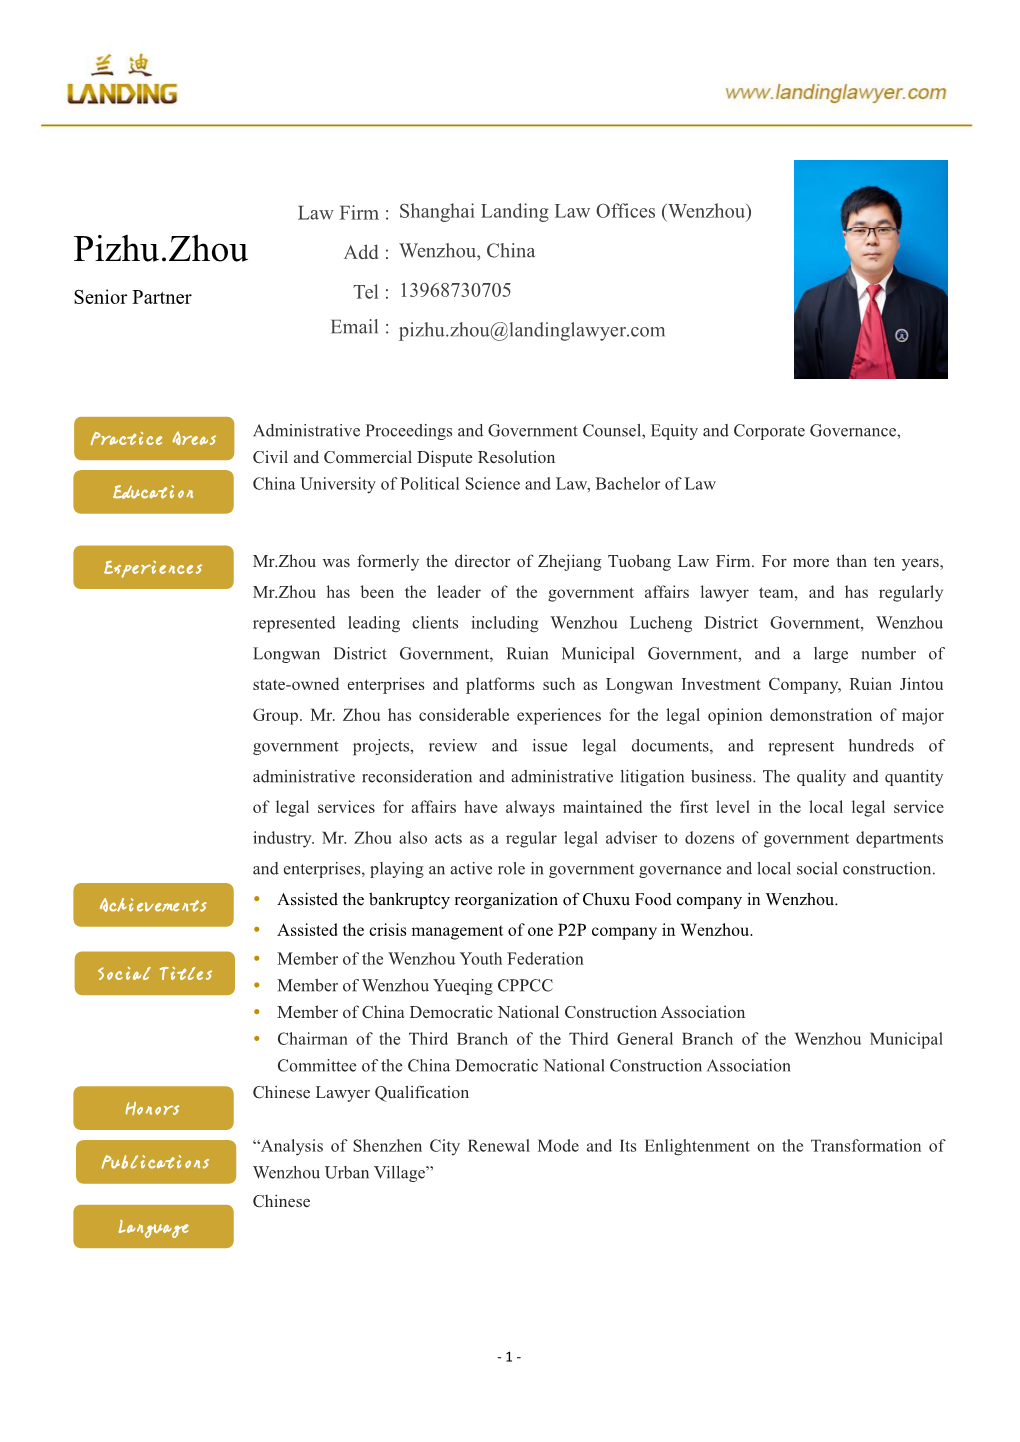 Pizhu.Zhou Add : Wenzhou, China Senior Partner Tel : 13968730705 Email : Pizhu.Zhou@Landinglawyer.Com